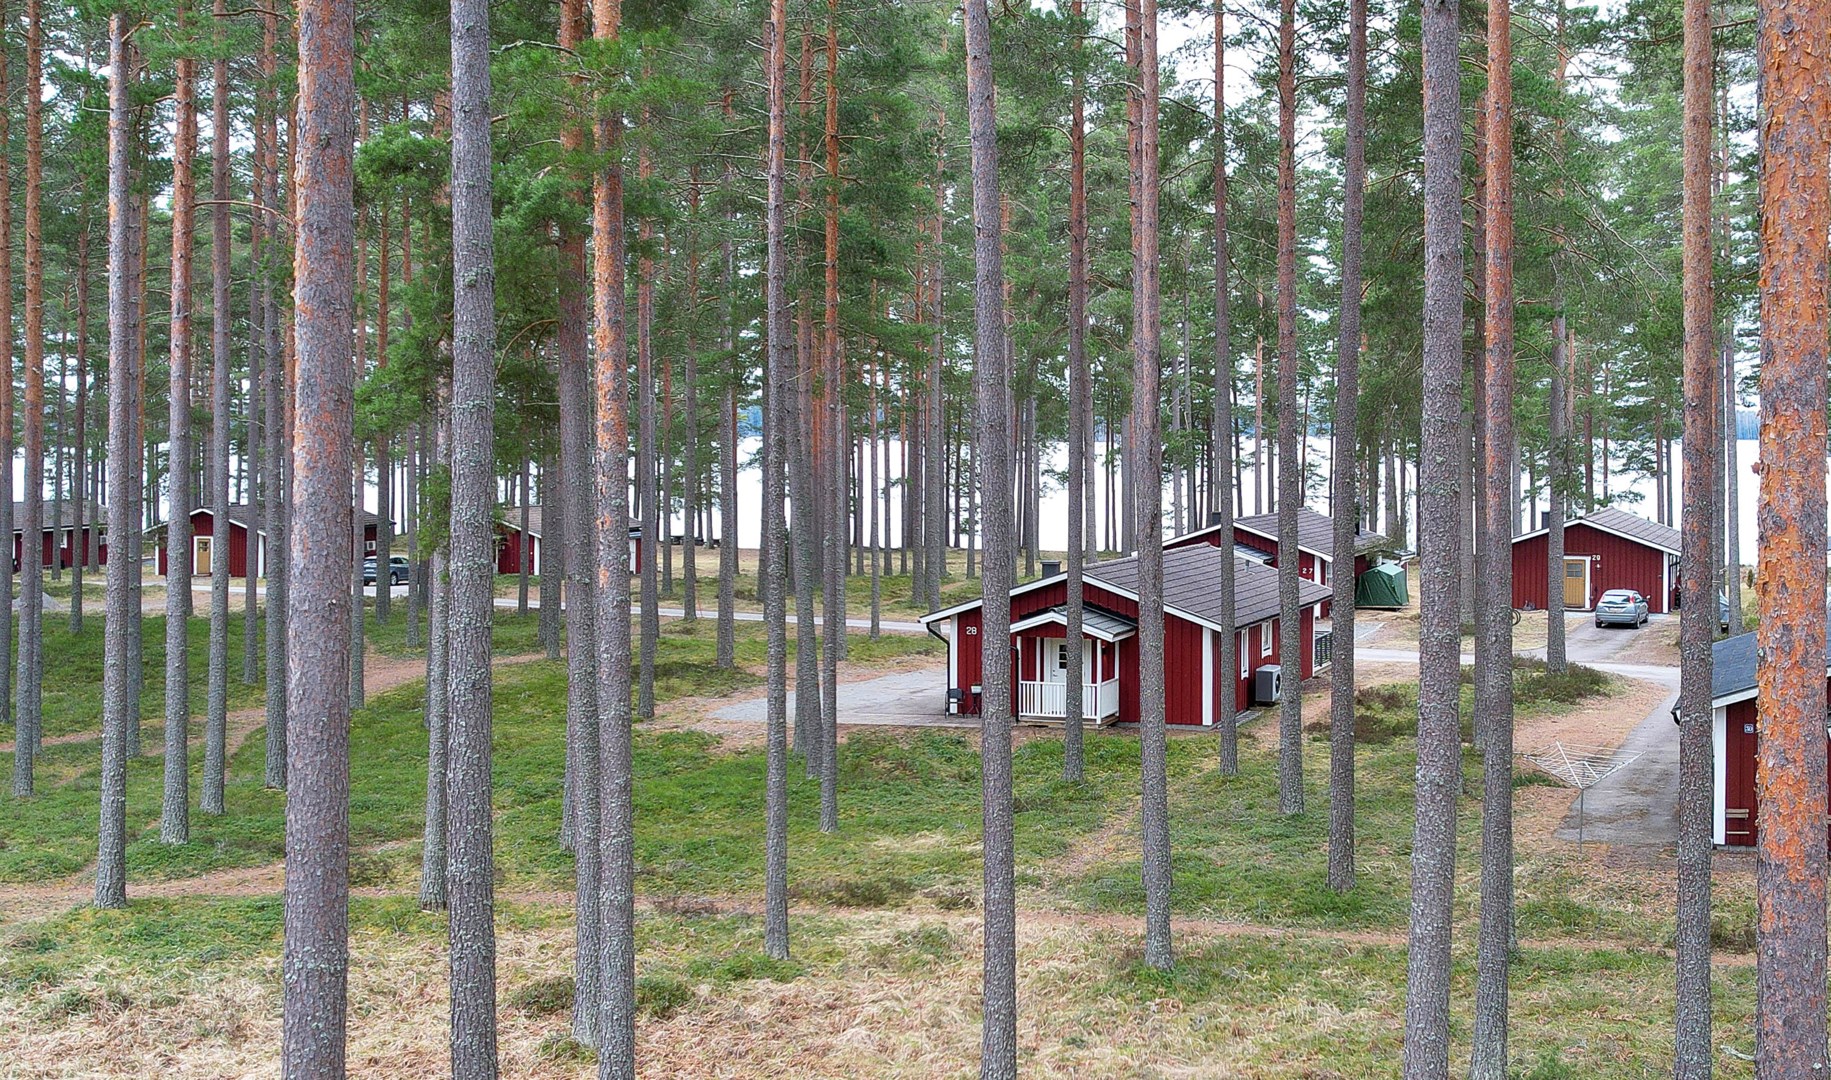 Bostadsrätt i Östa, Tärnsjö, Sverige, Östa 528